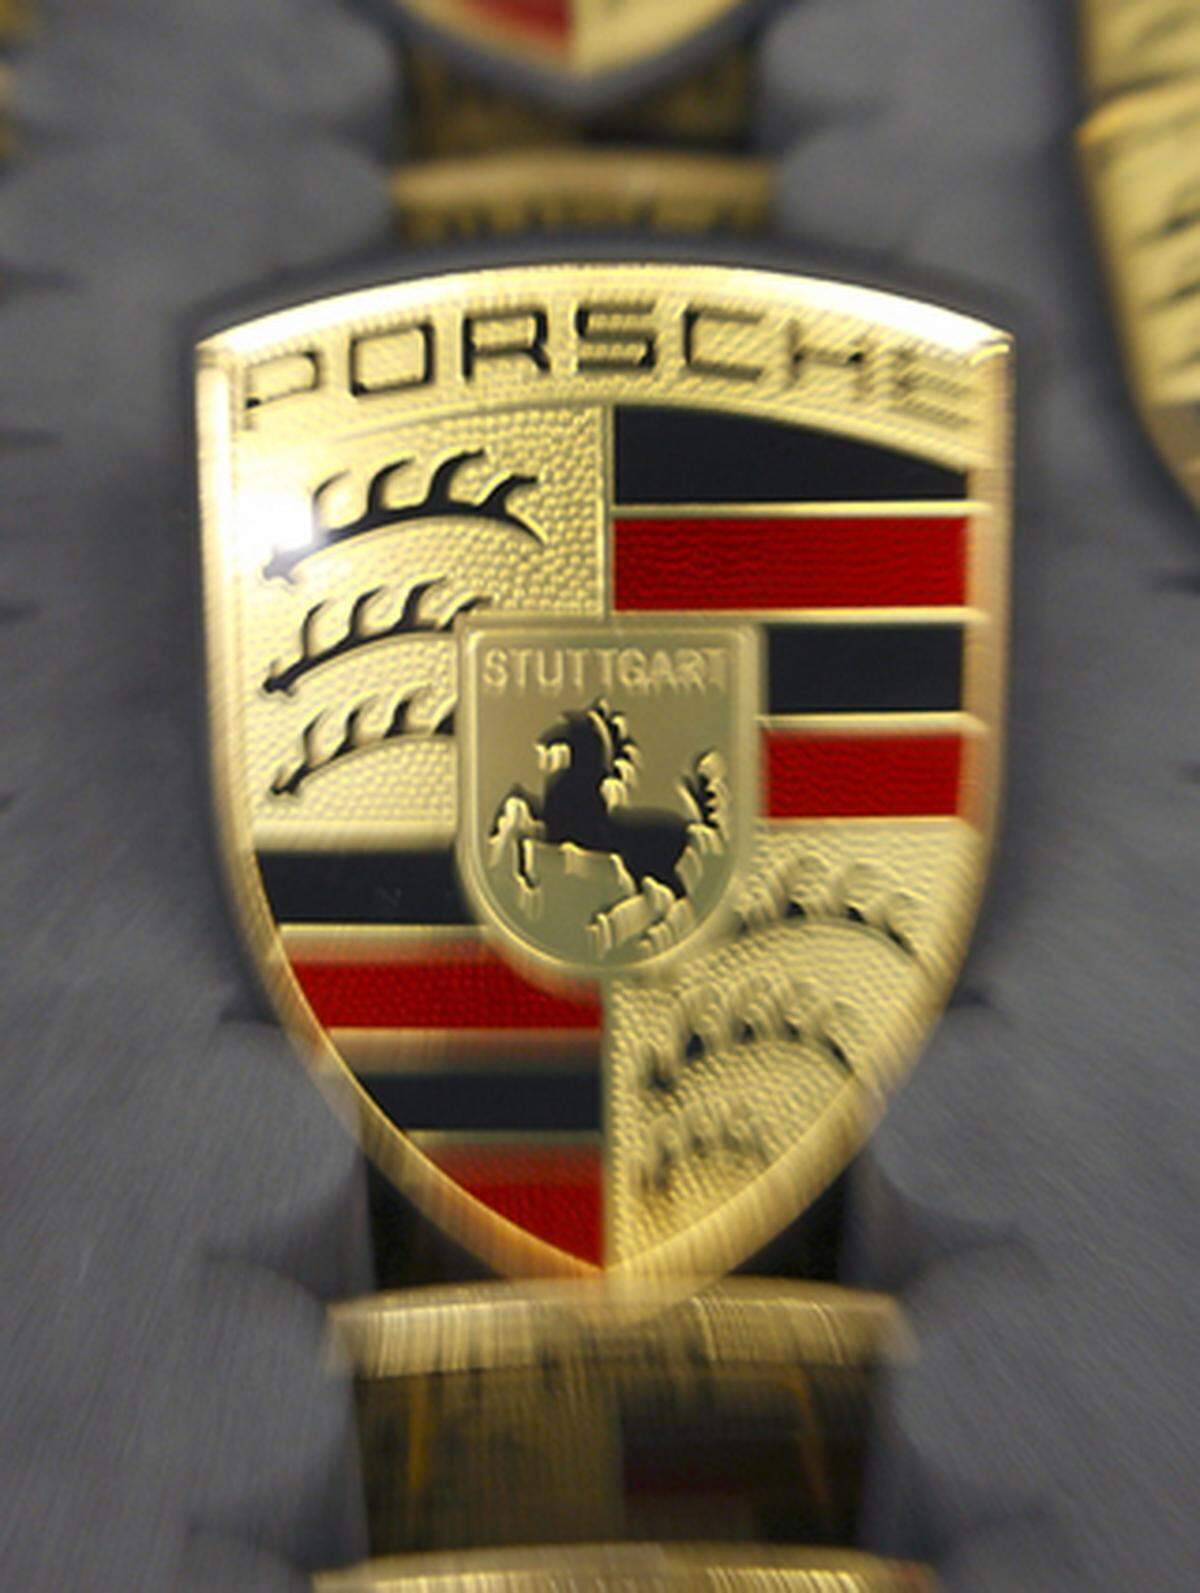 Die jüngsten  Absatzzahlen von Porsche deuten auf deutliche Rückgänge hin. Im Geschäftsjahr 2007/08 konnte Porsche  den Gewinn noch um 50 Prozent steigern. 